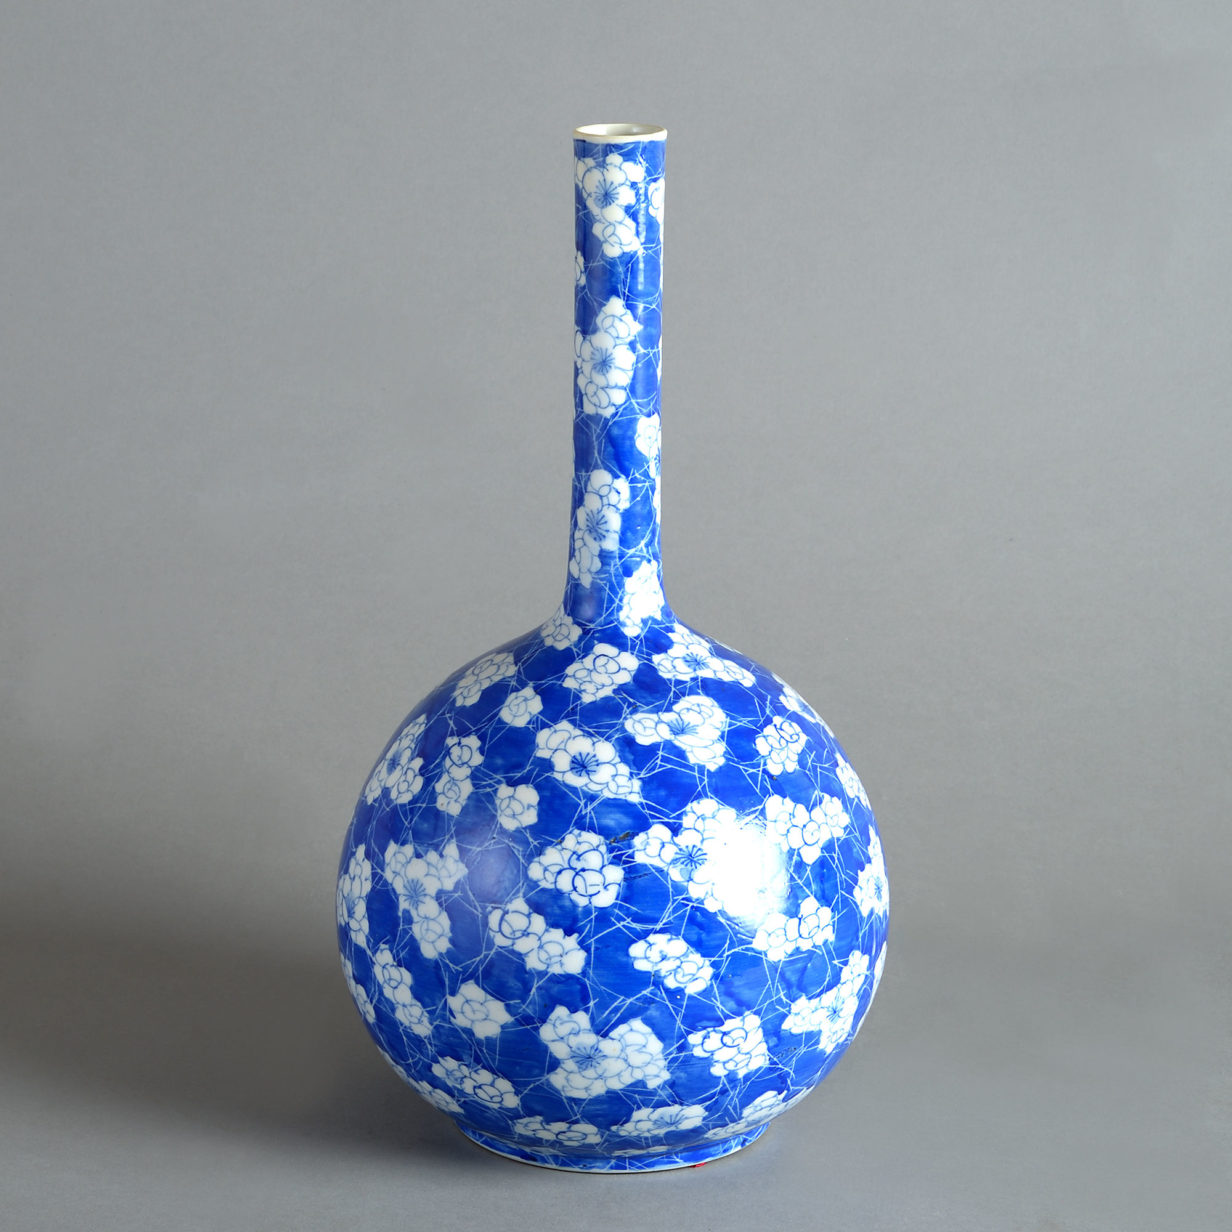 19th century blue & white porcelain bottle vase